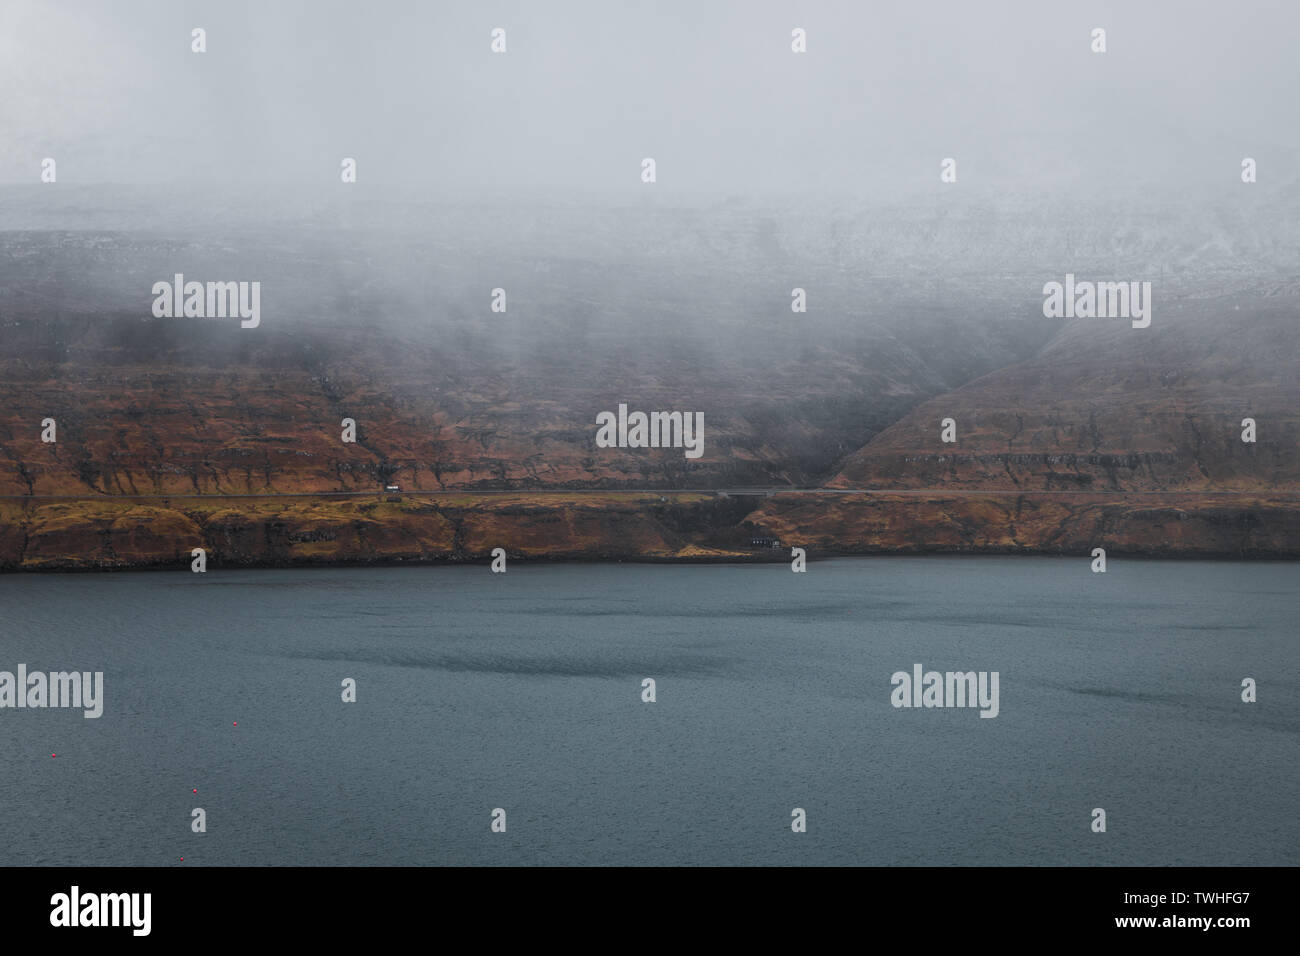 Moody tipico paesaggio delle isole Faeroeer come si vede dalla fossa cascata con nebbia bassa appesi nelle montagne di fronte al blu scuro del mare (Isole Faerøer) Foto Stock